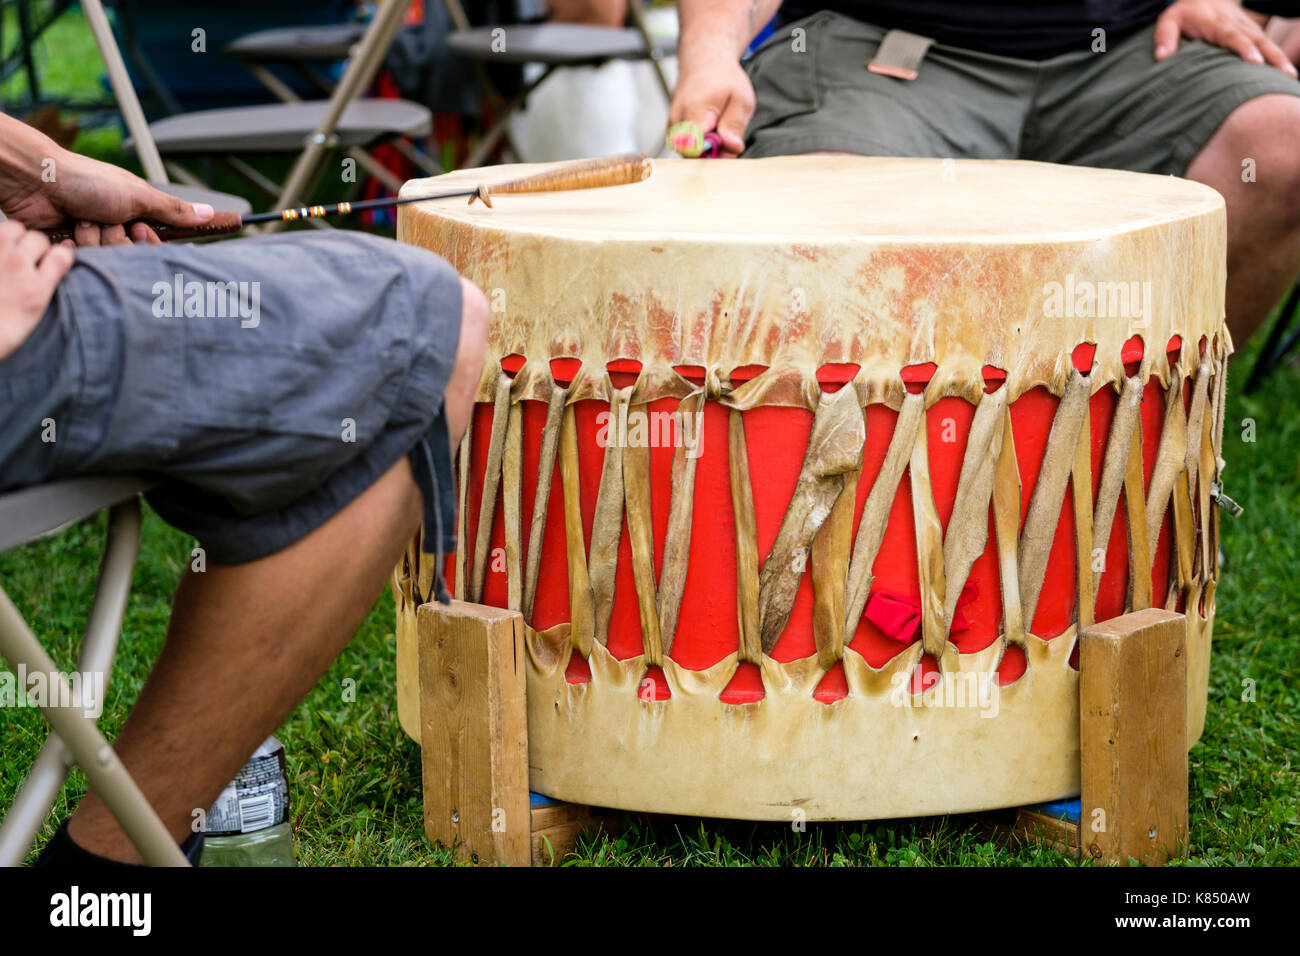 Canada INDÍGENA, CANADÁ El tambor ceremonial de las Primeras Naciones se utiliza para las ceremonias, danzas y celebraciones de las comunidades nativas. Foto de stock